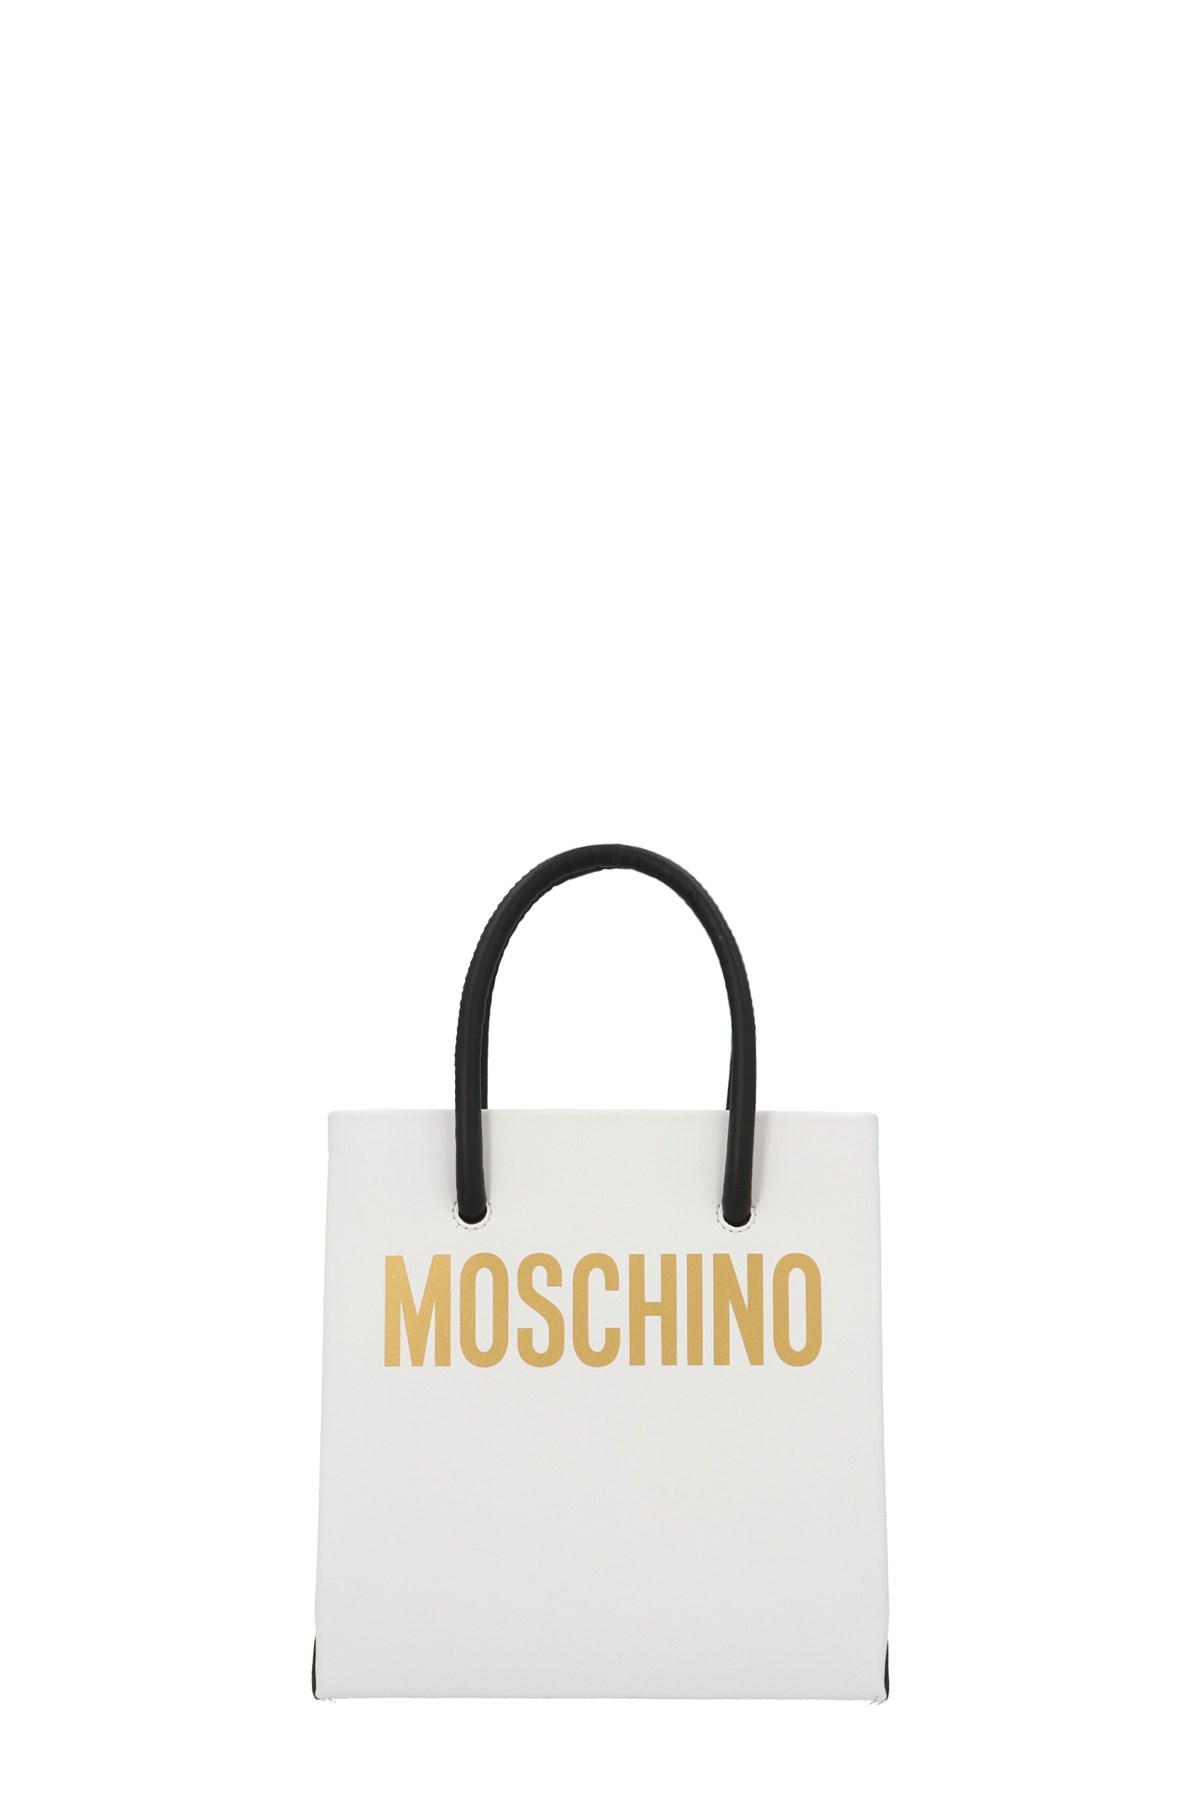 MOSCHINO Logo Mini Handbag